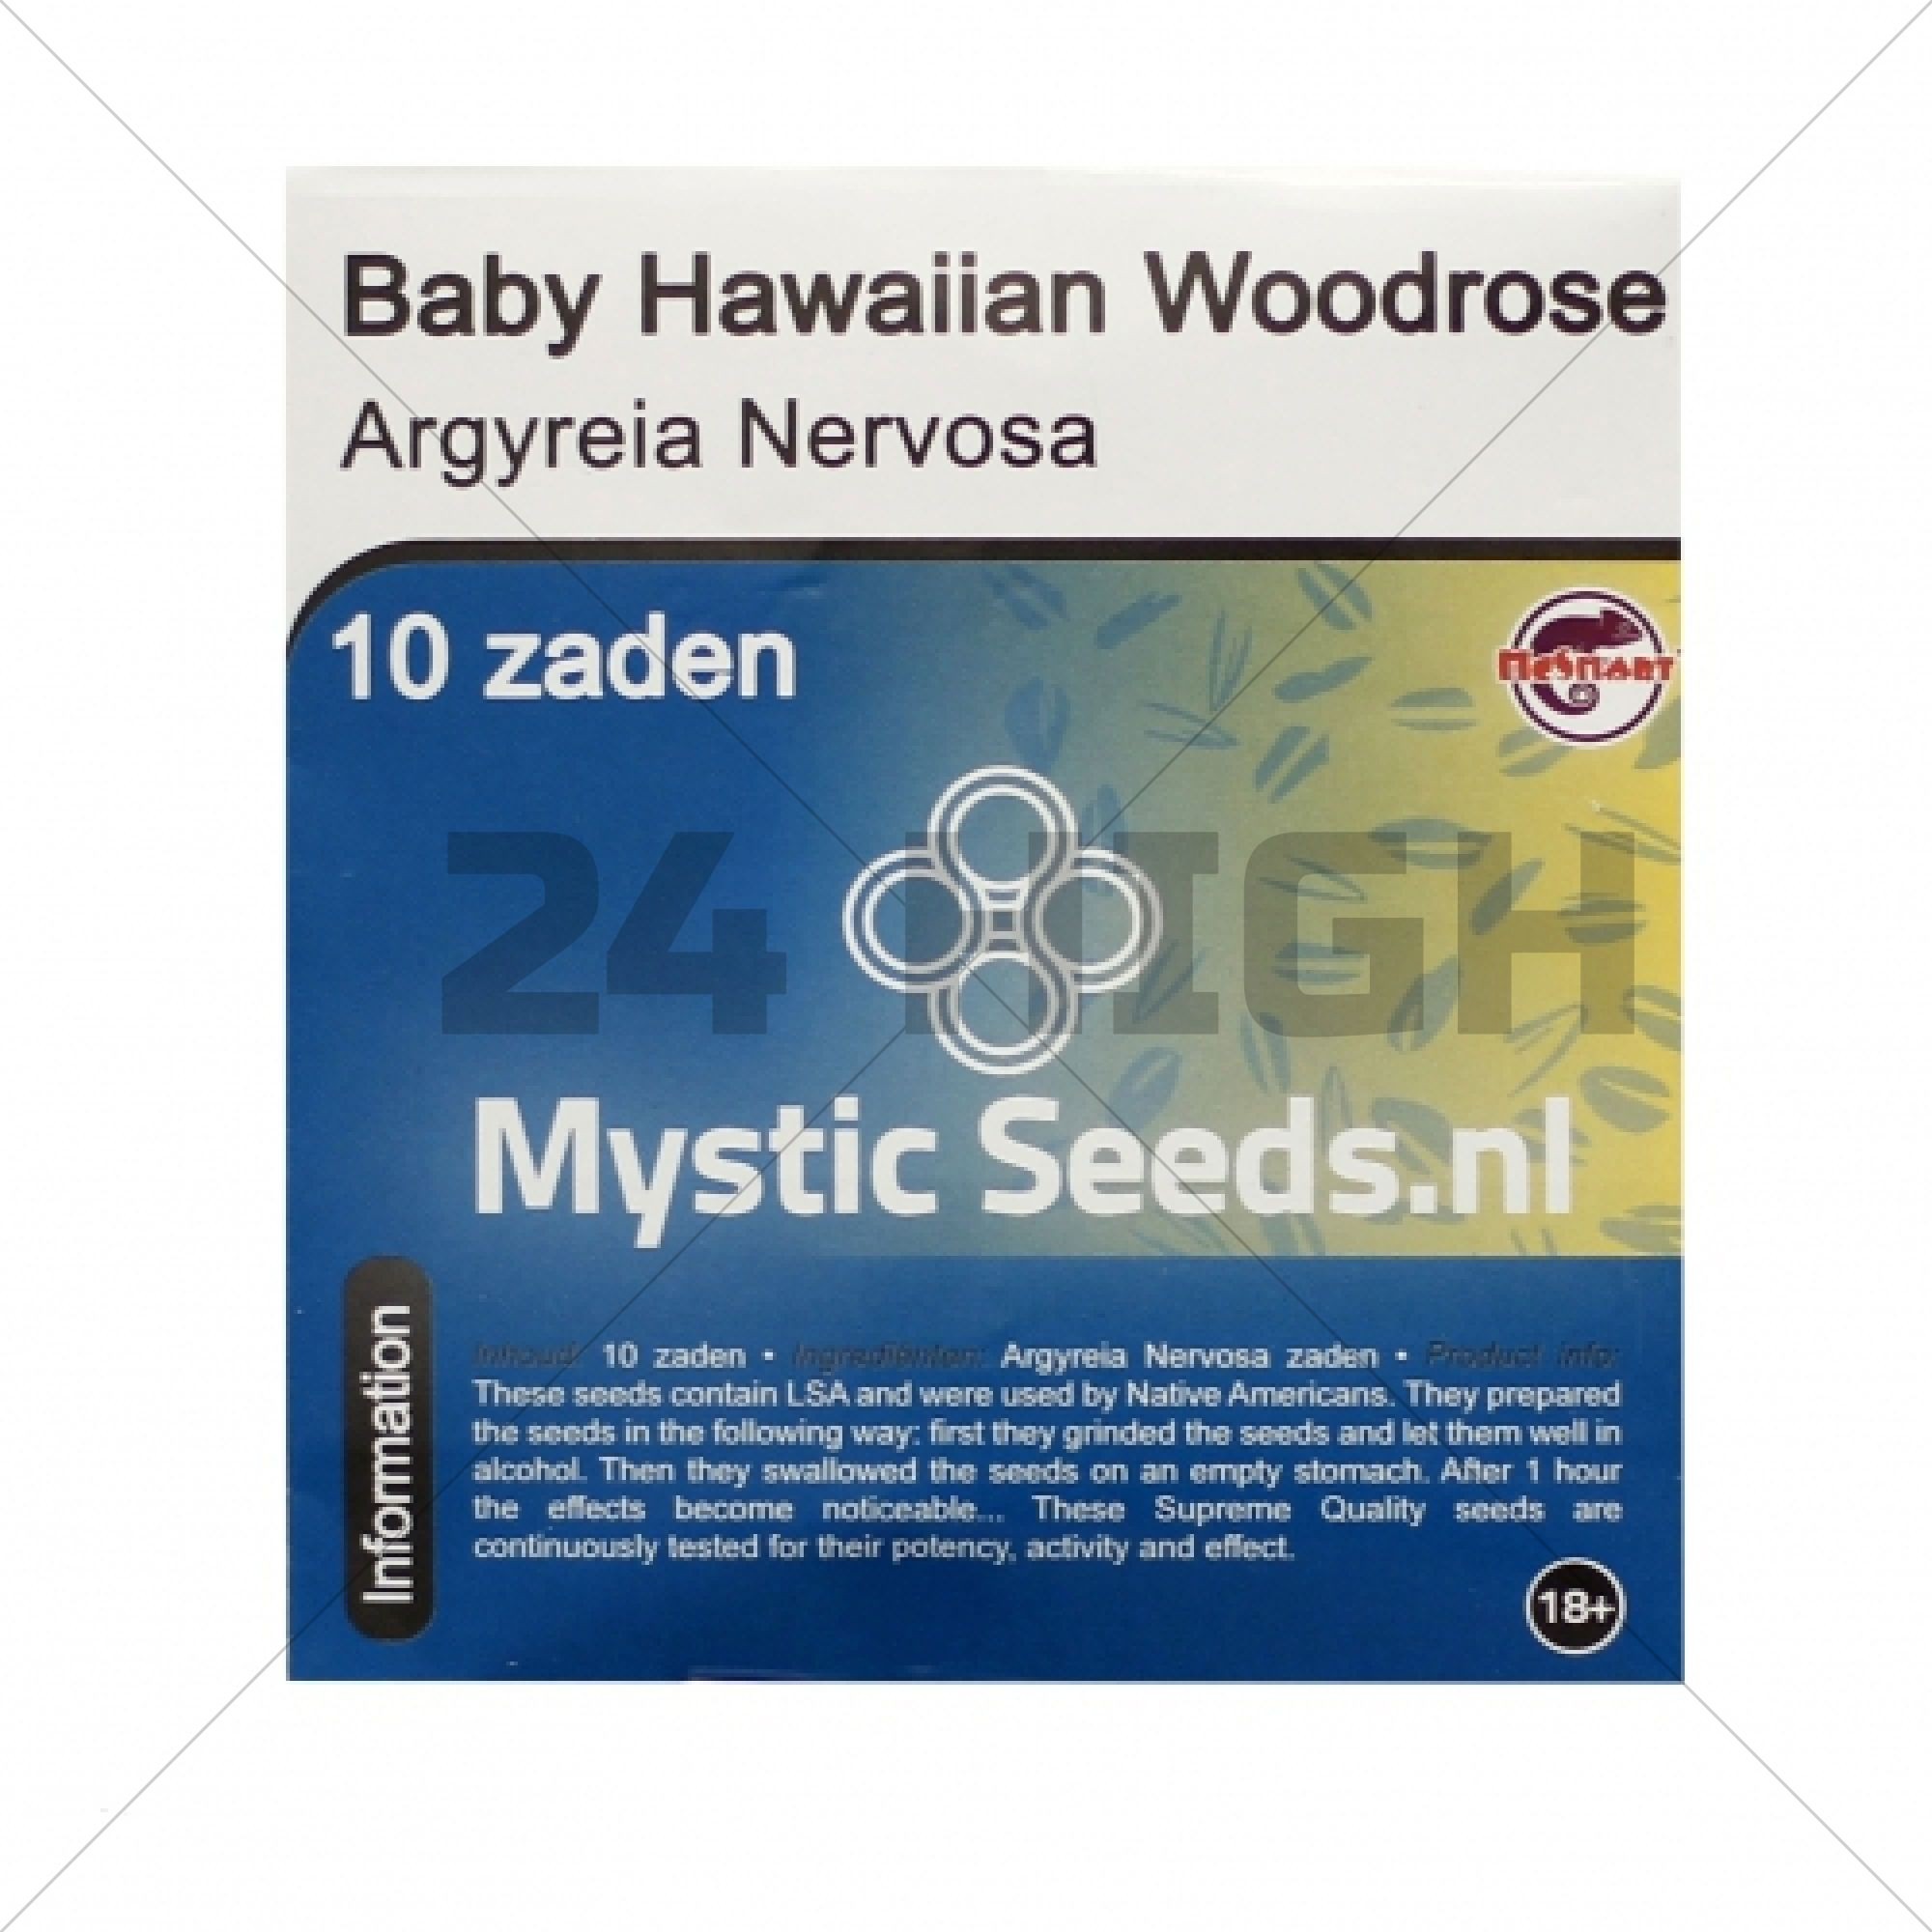 Baby Hawaiian Woodrose